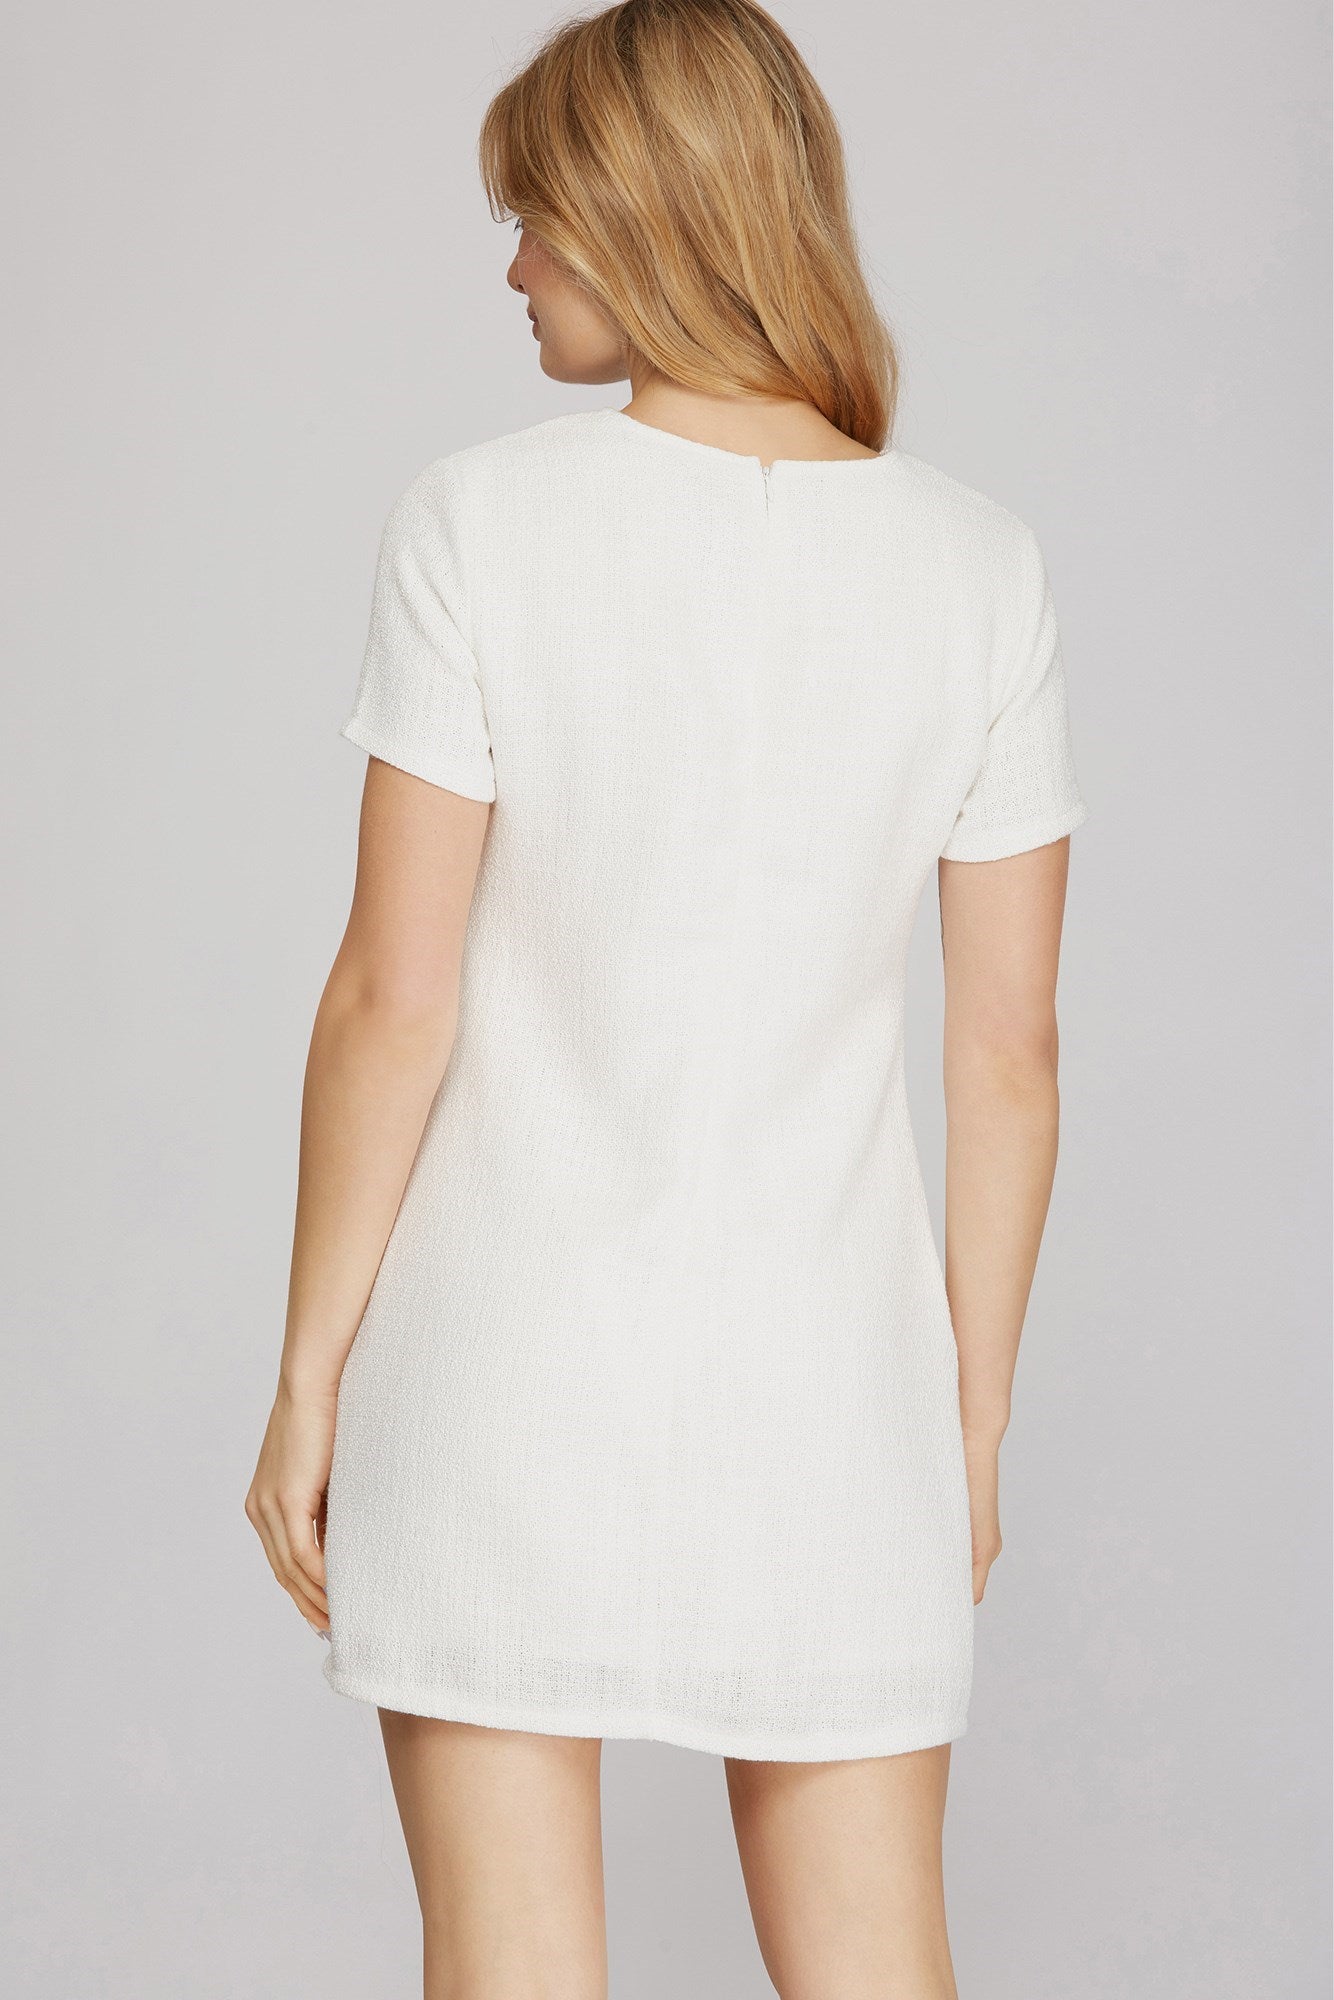 Annalise Dress (White)